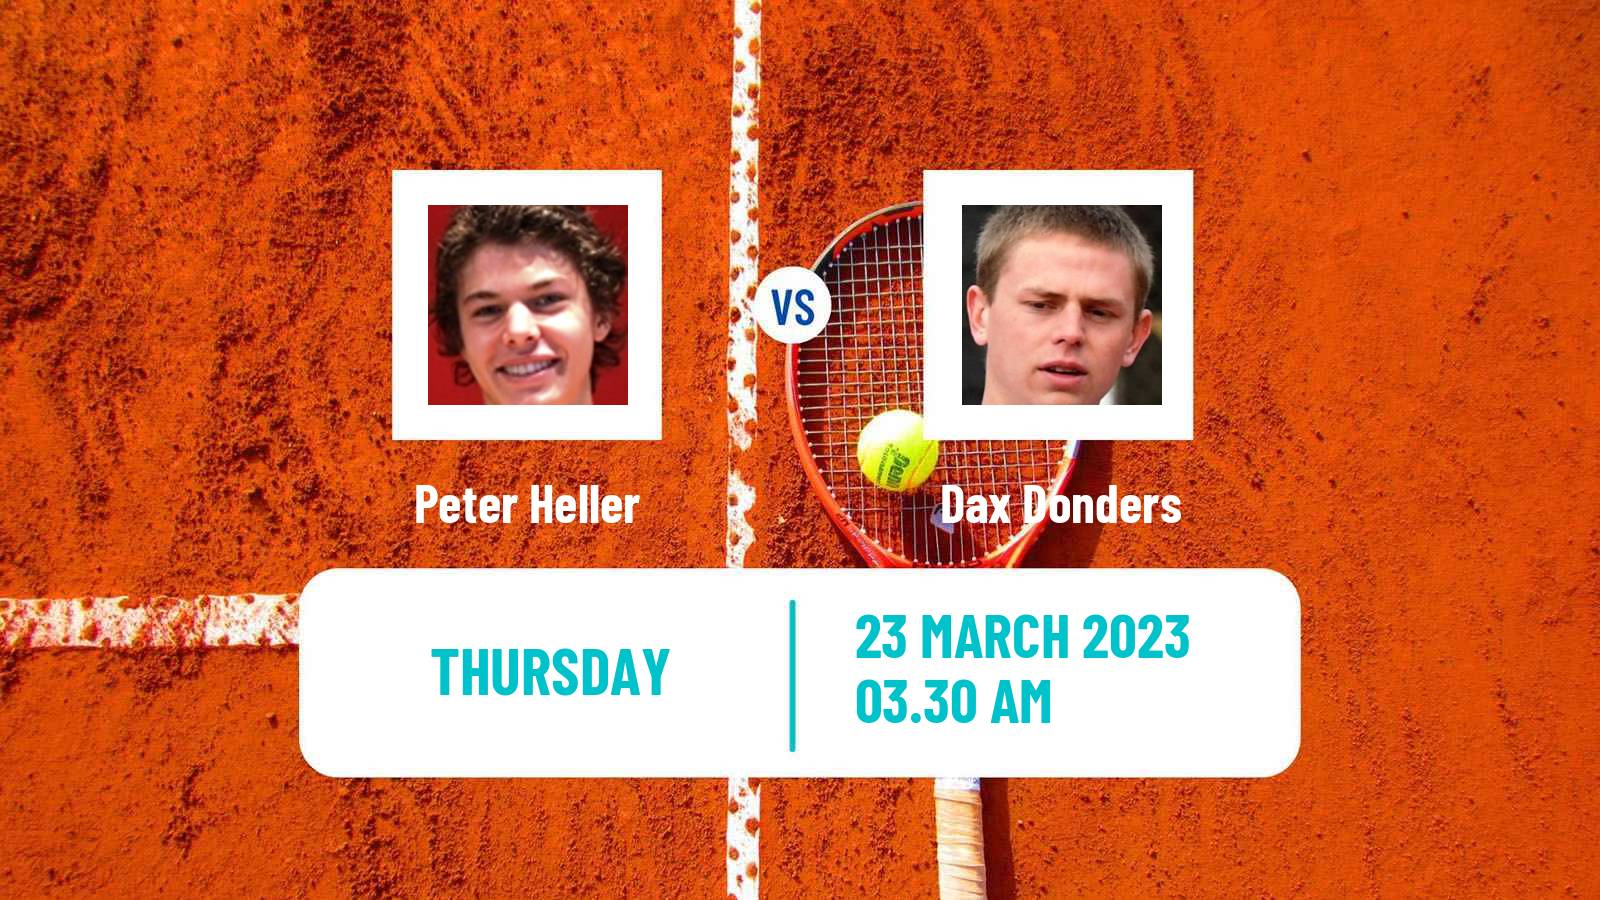 Tennis ITF Tournaments Peter Heller - Dax Donders